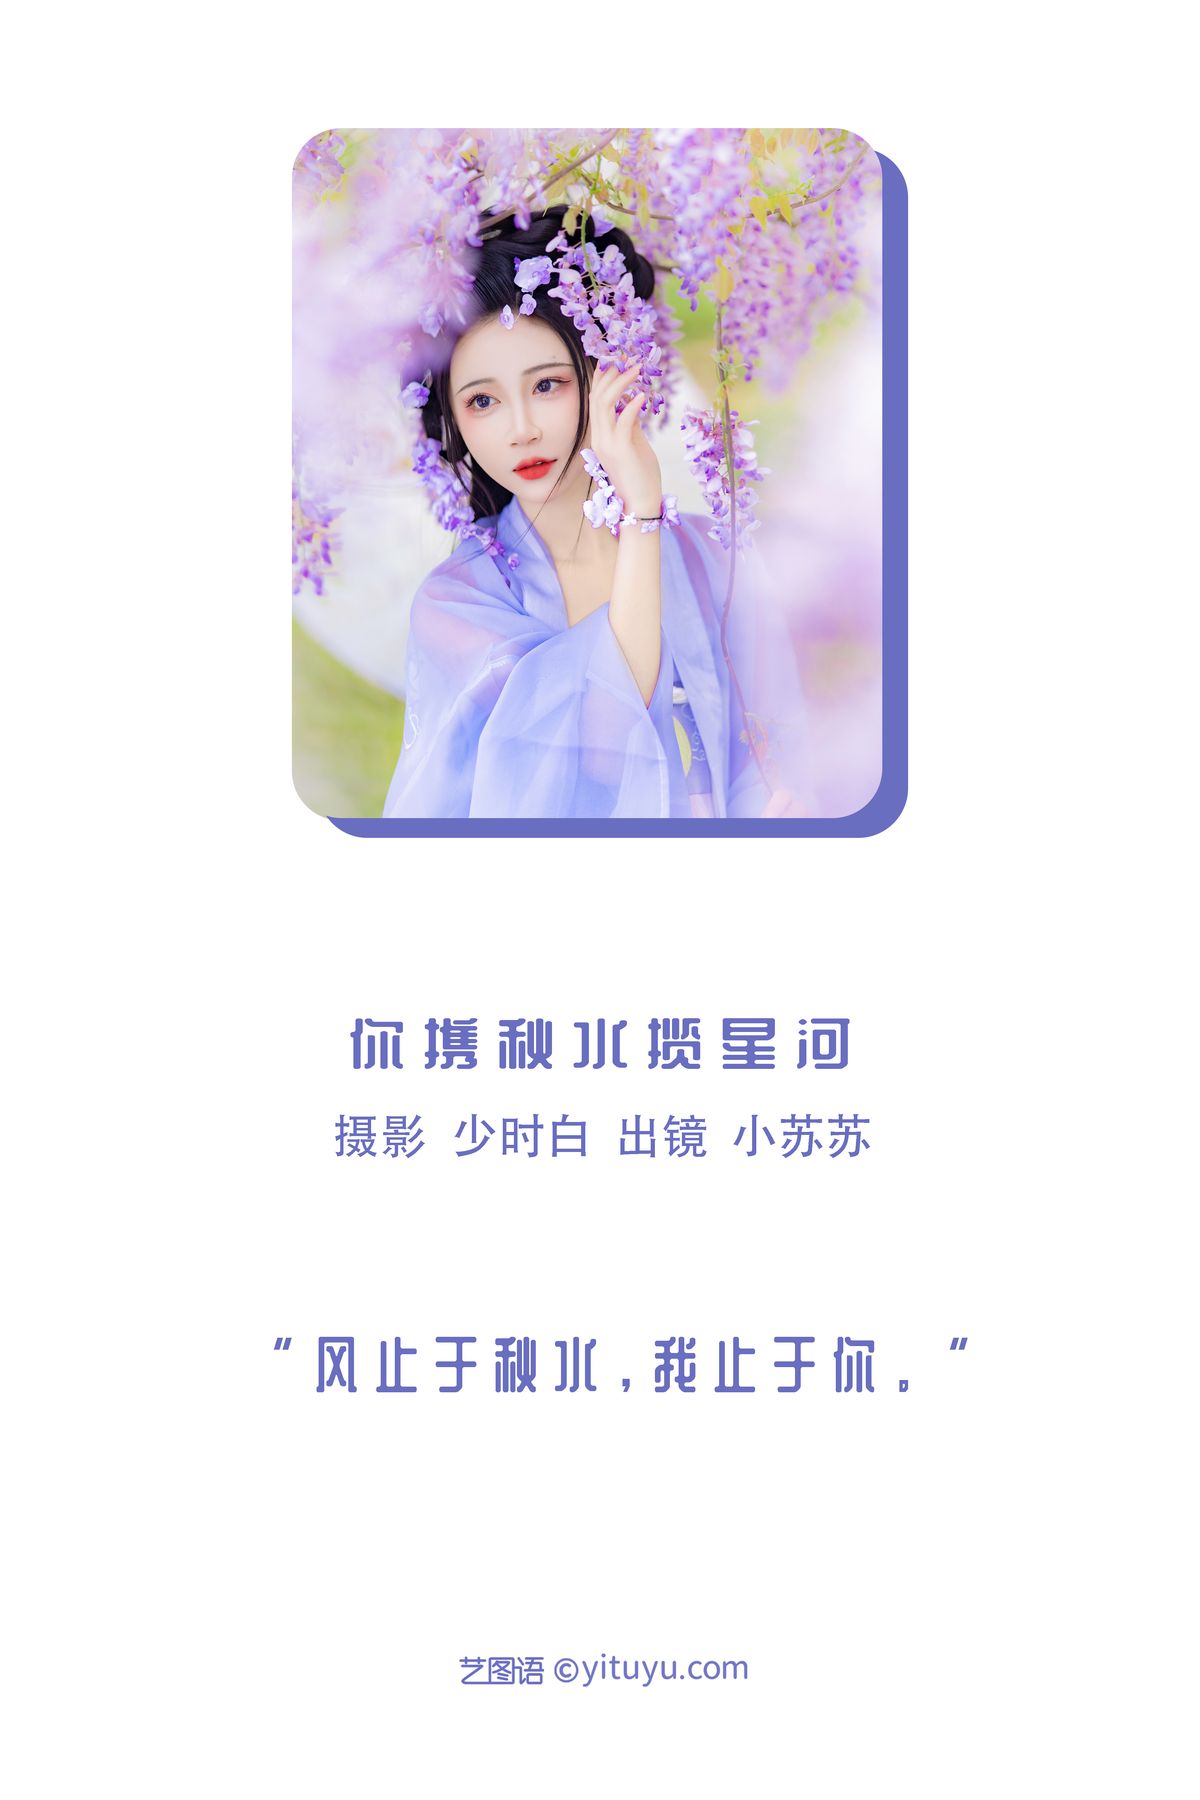 YiTuYu艺图语 Vol 3078 Qi Luo Sheng De Xiao Su Su 0001 4547362120.jpg